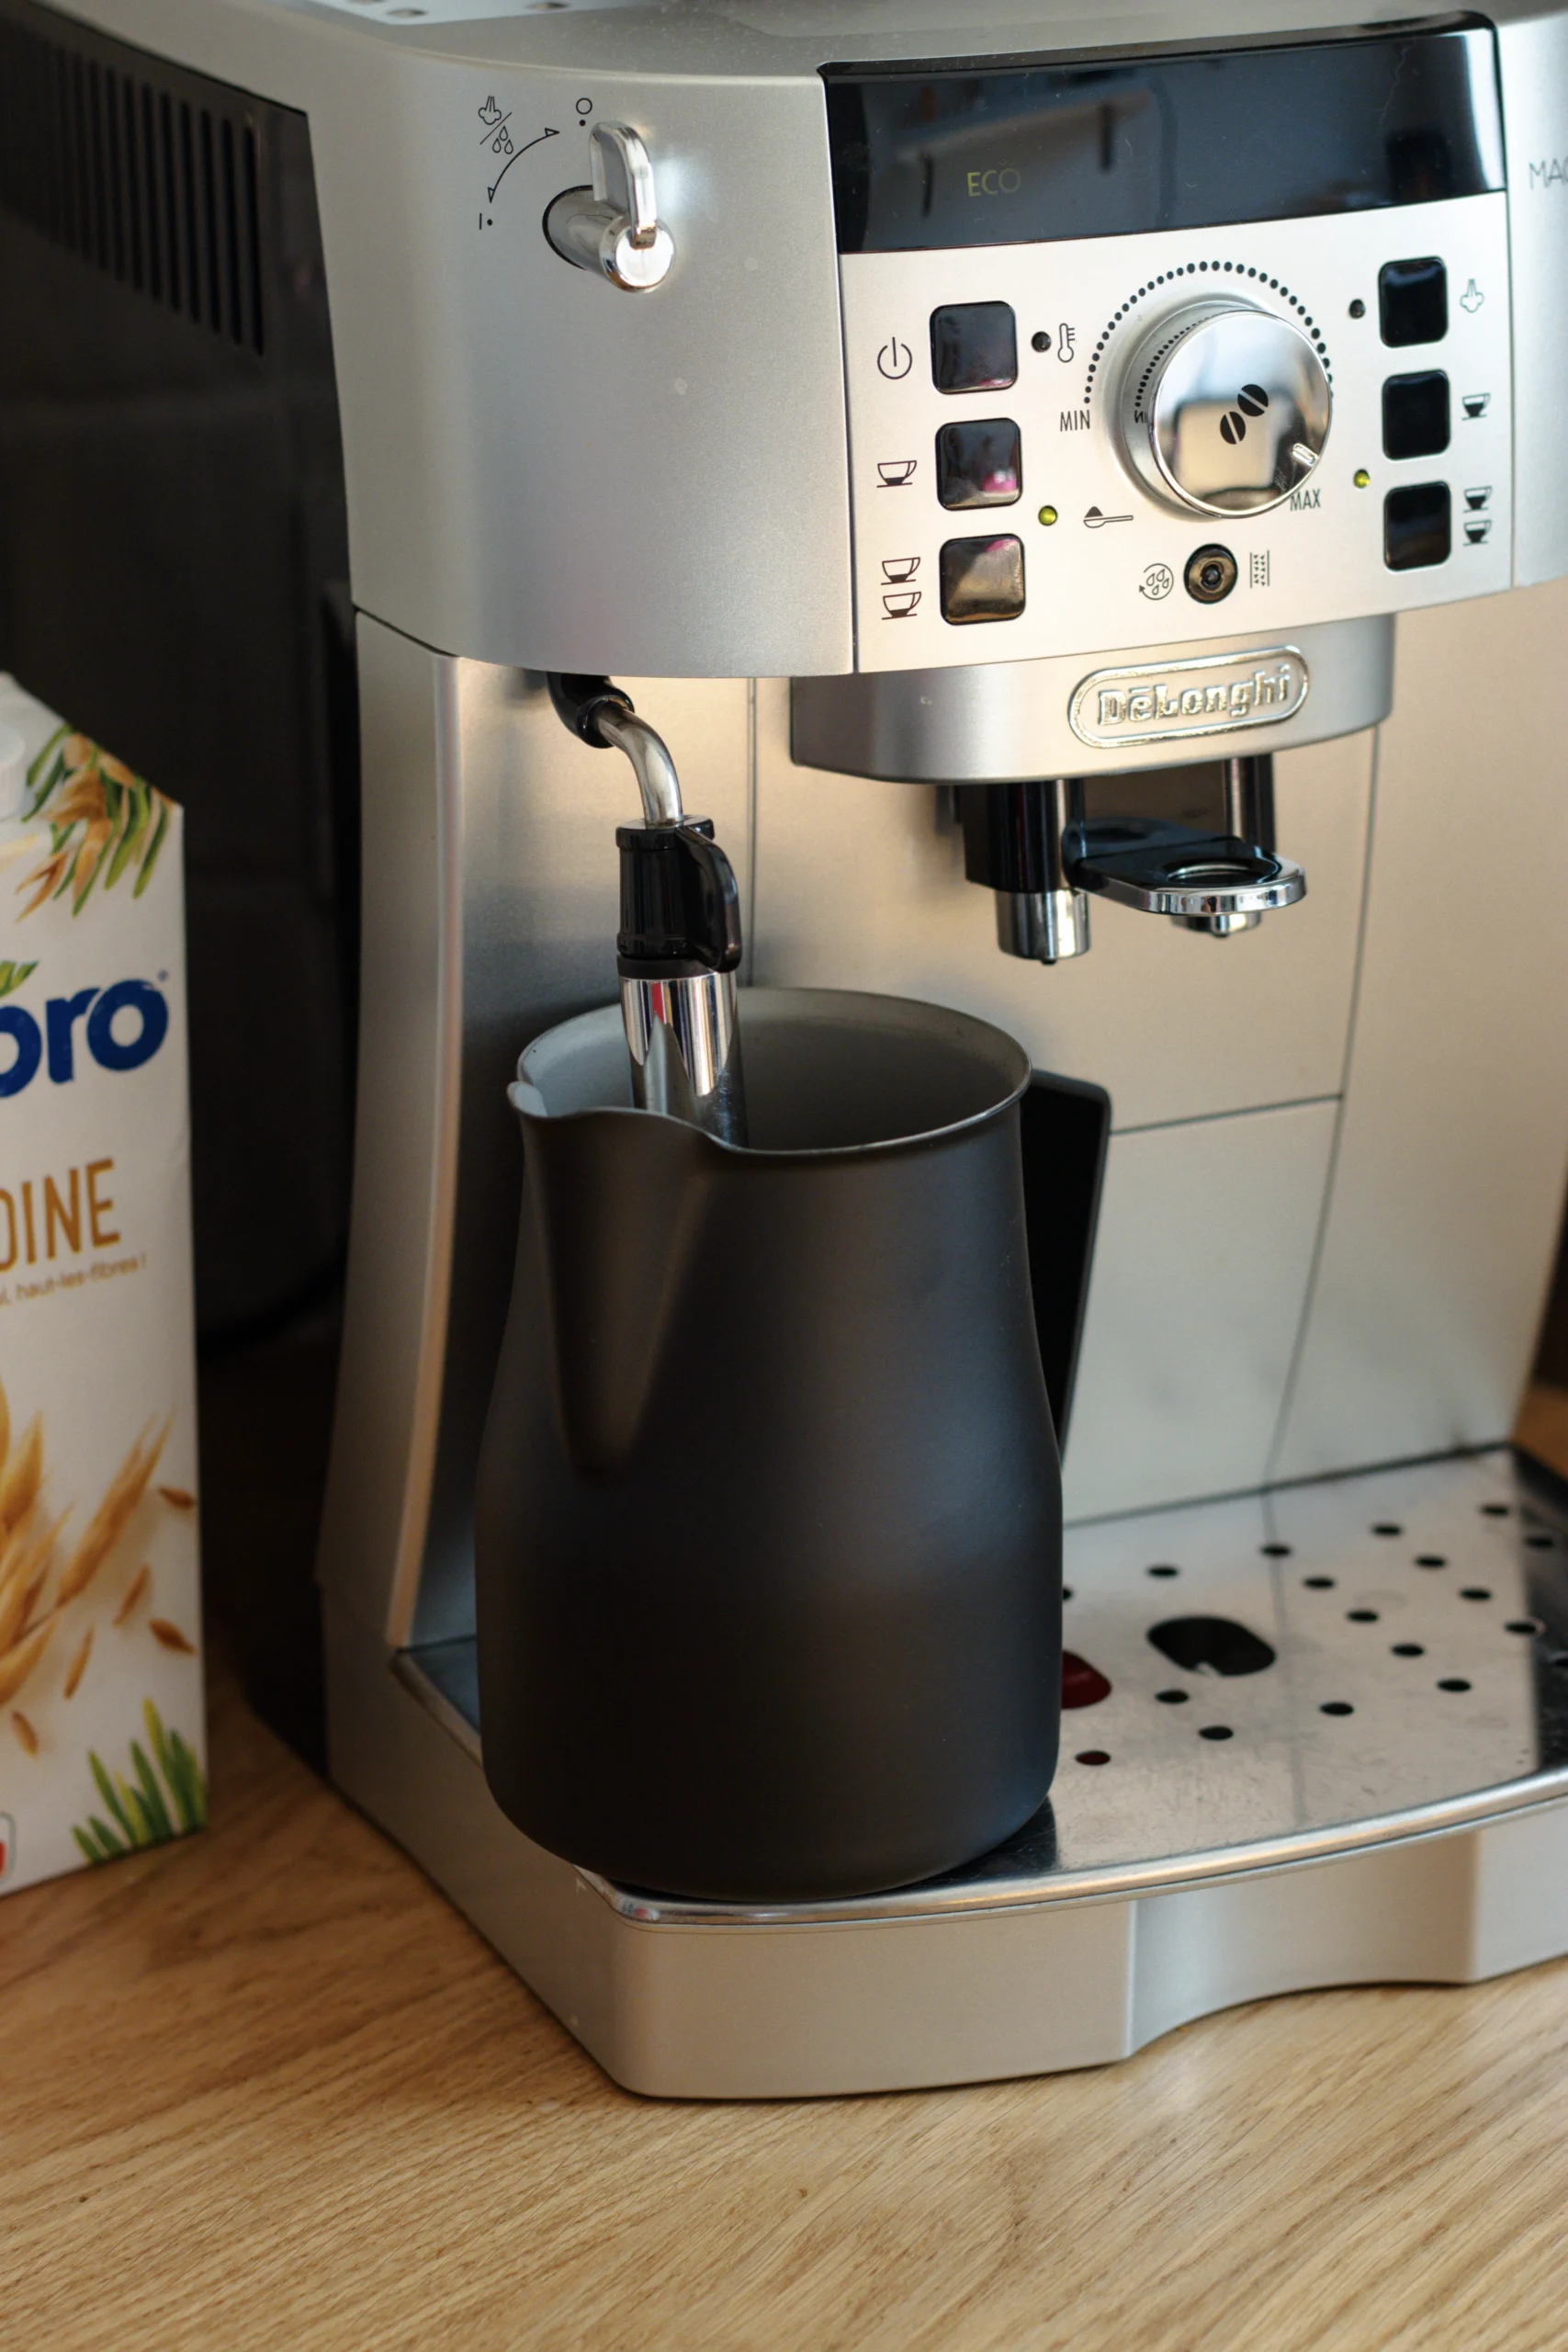 Pichet à lait 350ml delonghi - accessoires machine à café - cafés